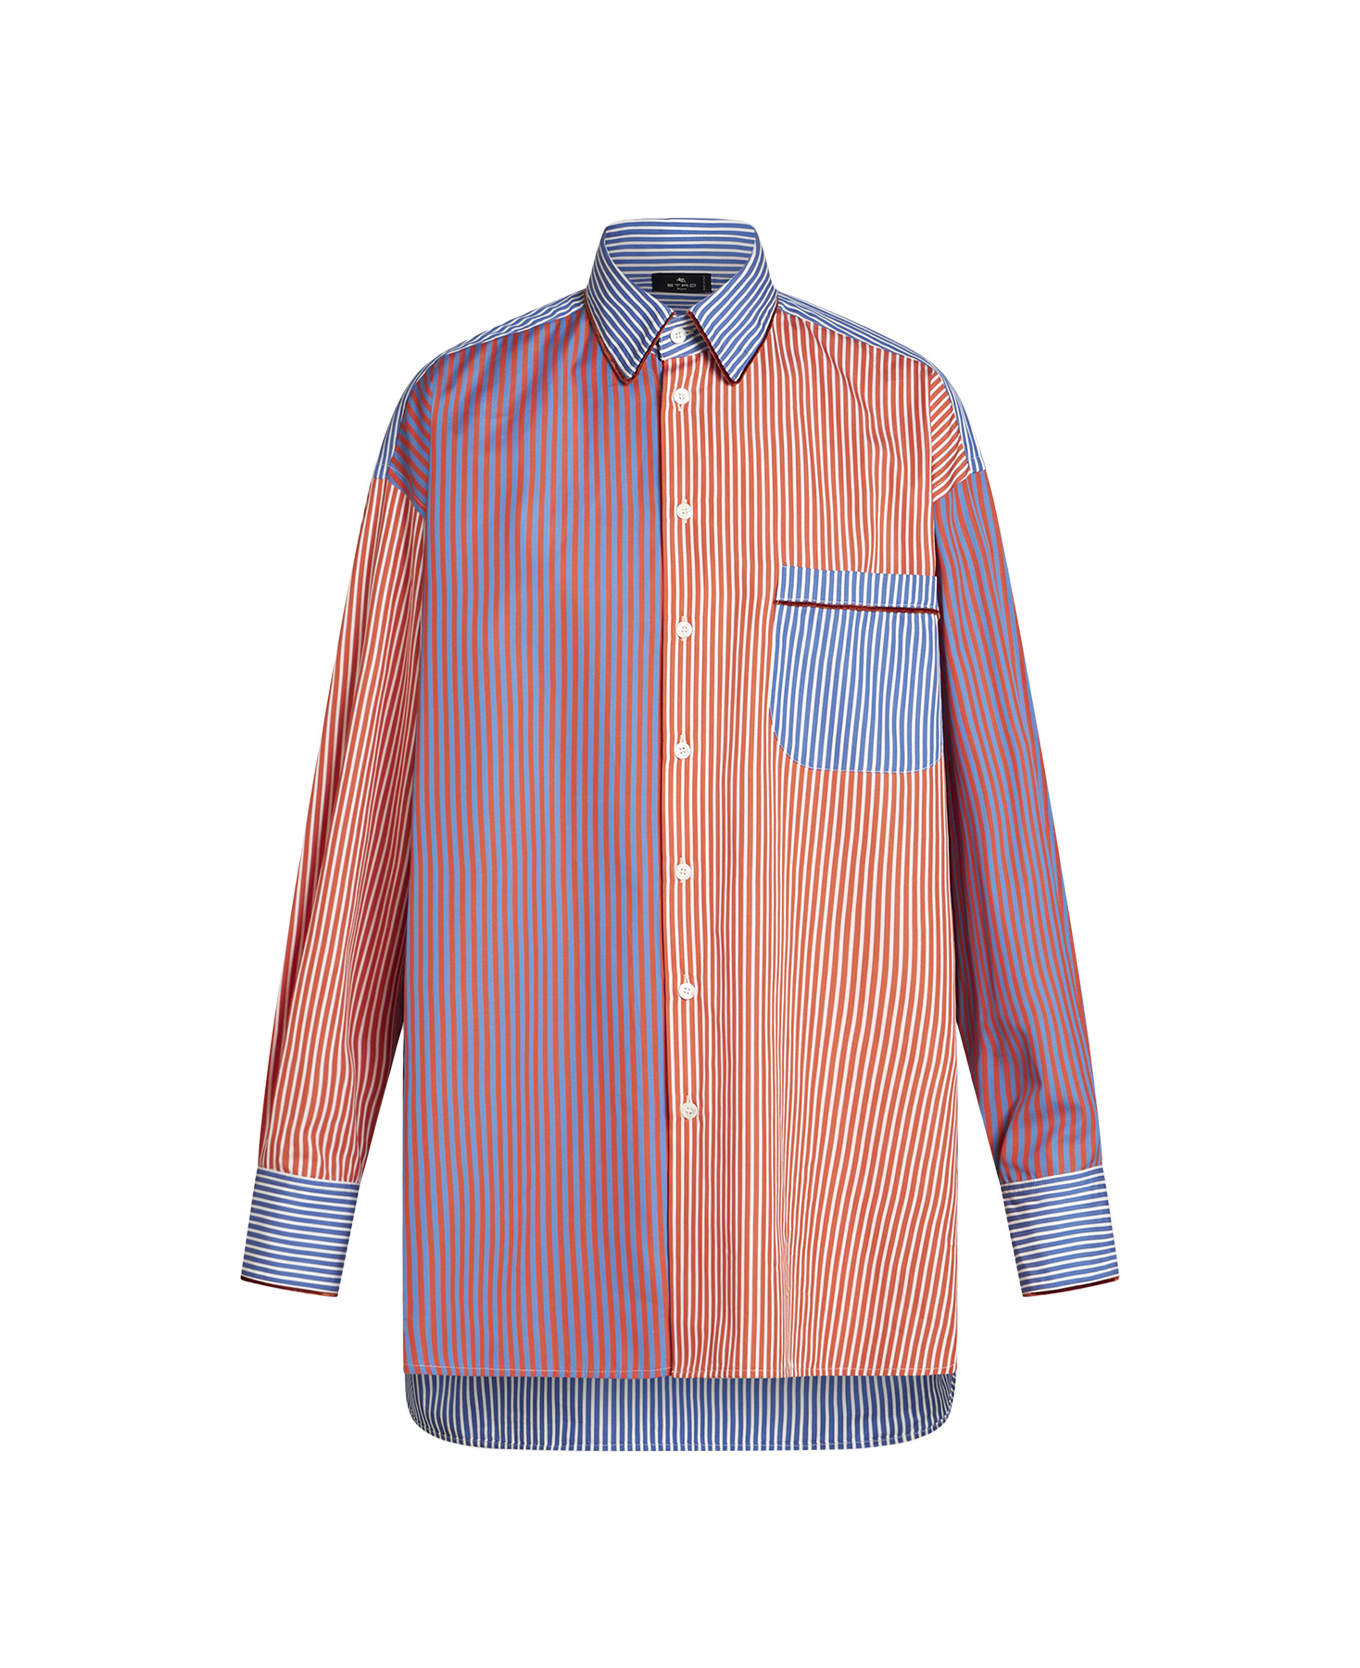 Etro Multicolored Striped Cotton Shirt - Multicolour